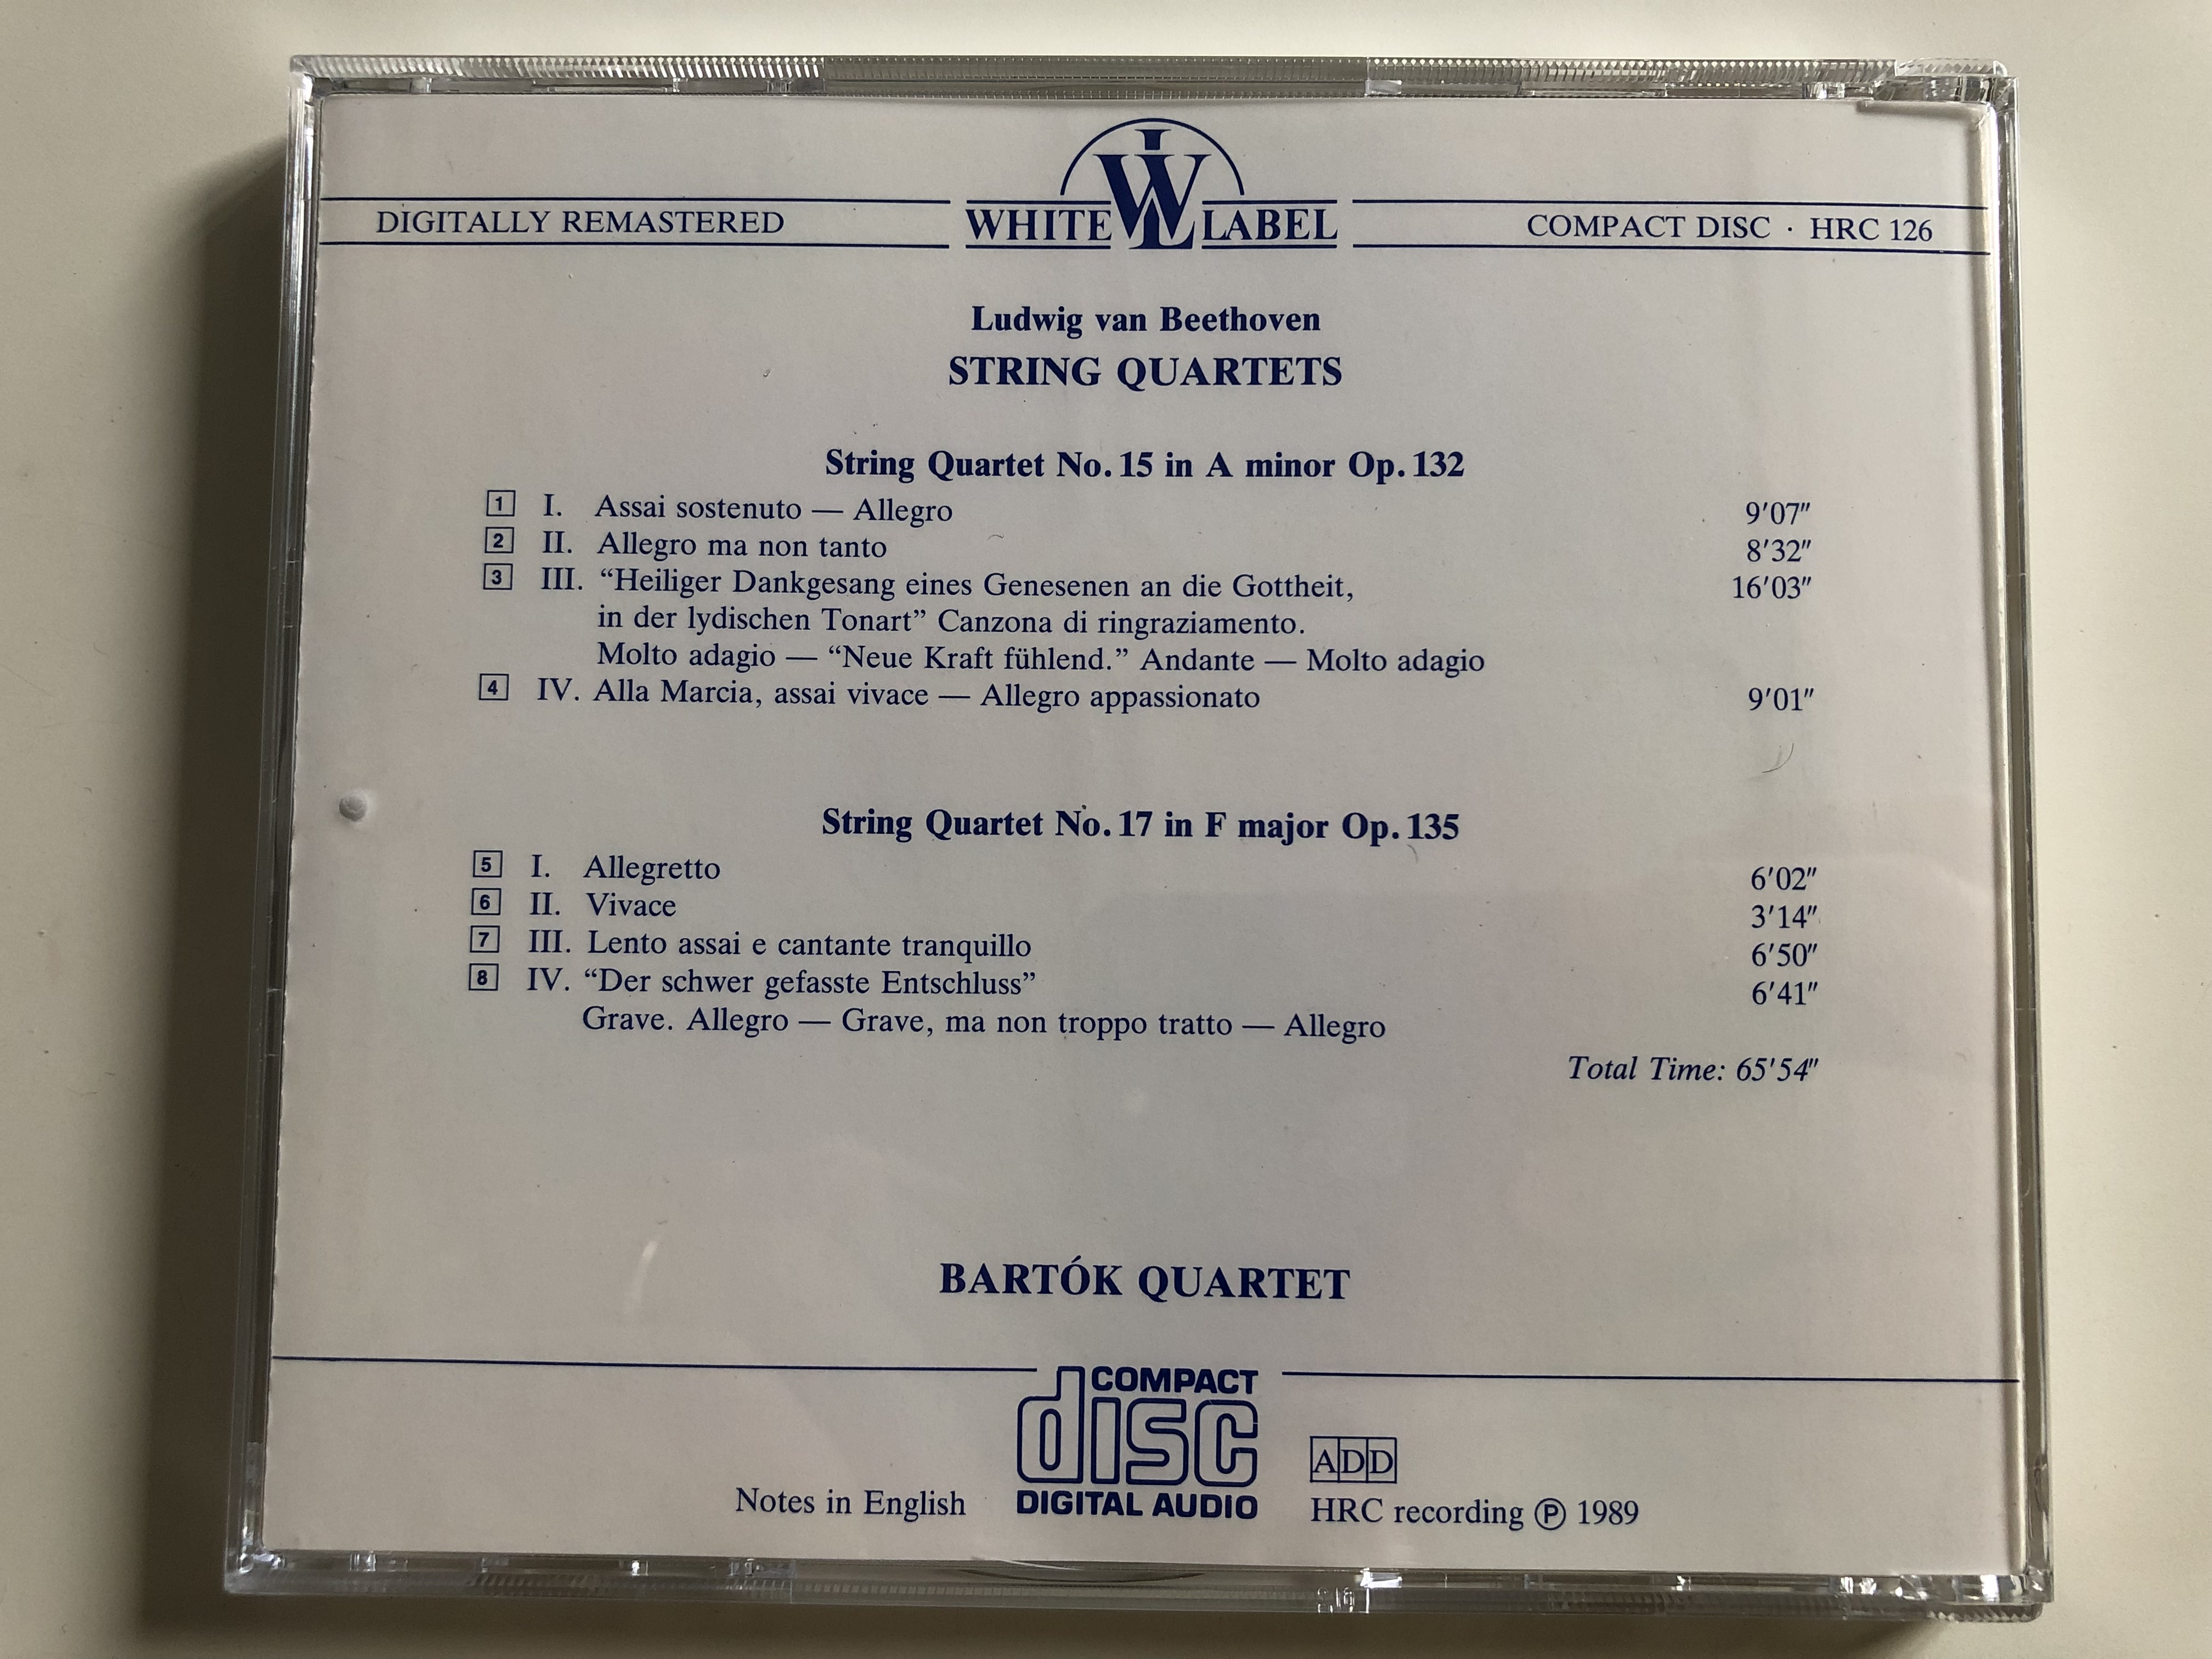 beethoven-string-quartets-a-minor-op.-132-f-major-op.-135-bart-k-quartet-hungaroton-white-label-audio-cd-1989-hrc-126-5-.jpg